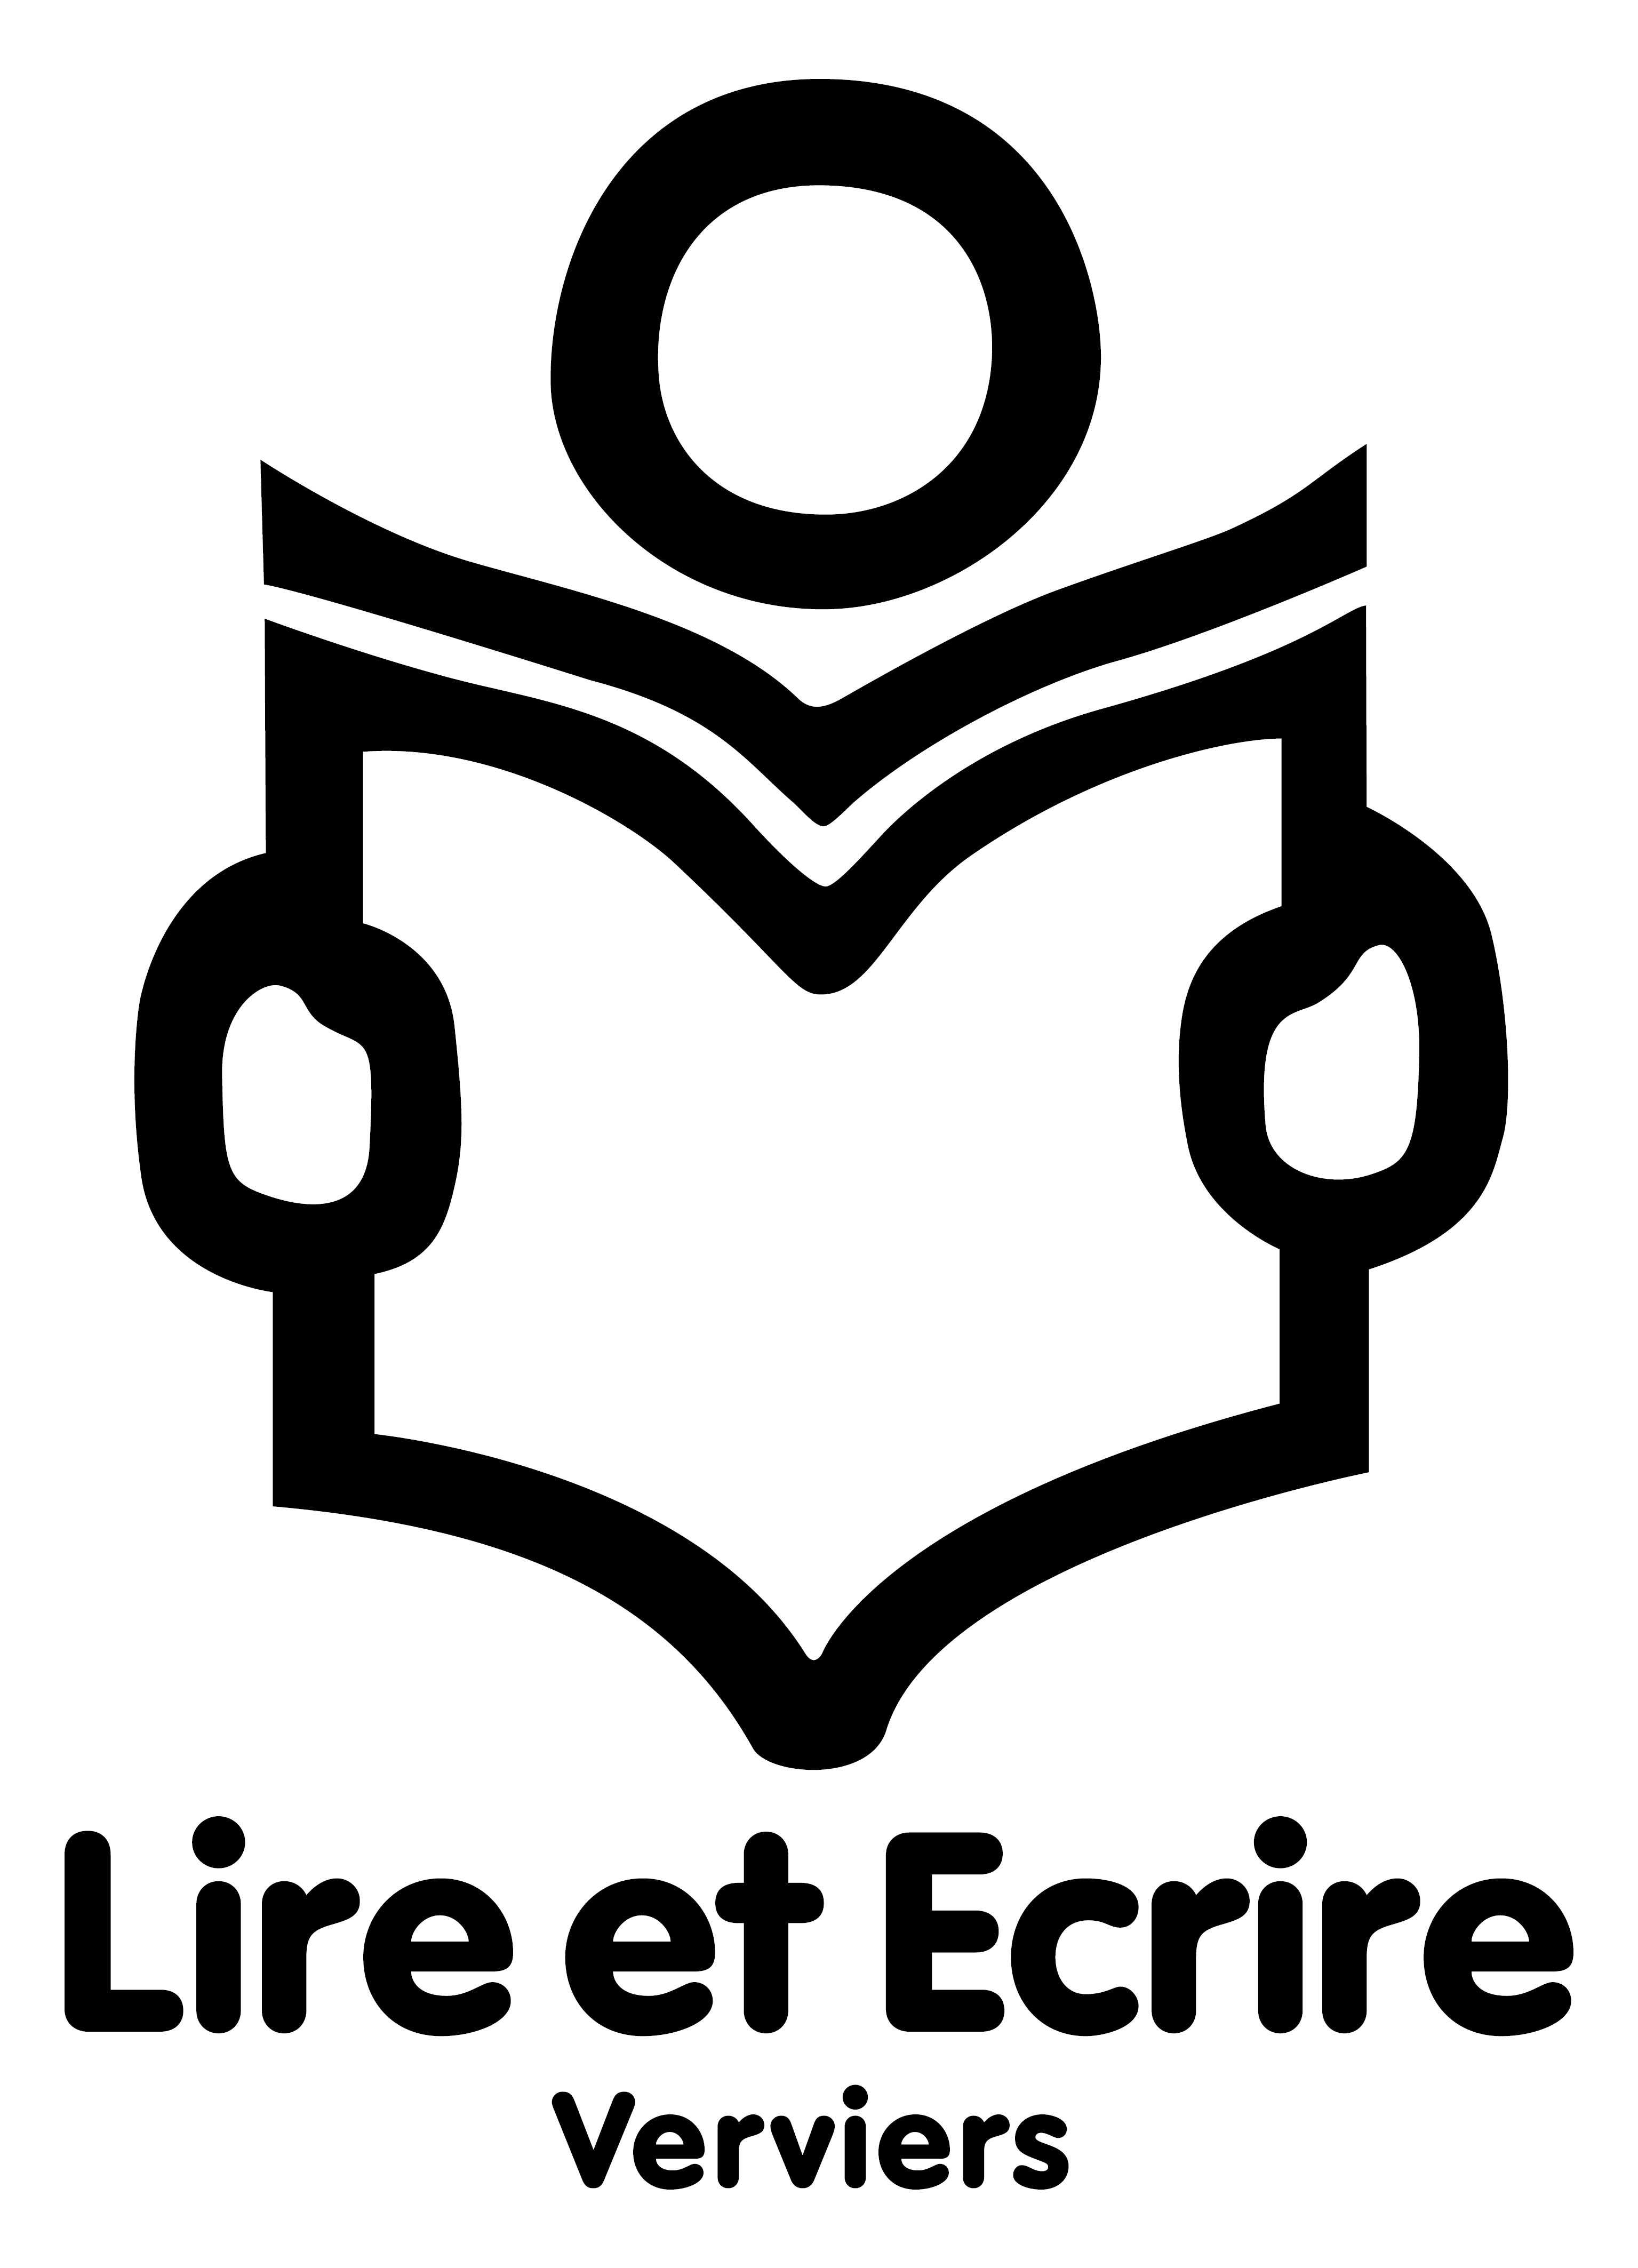 Lire et Ecrire Verviers